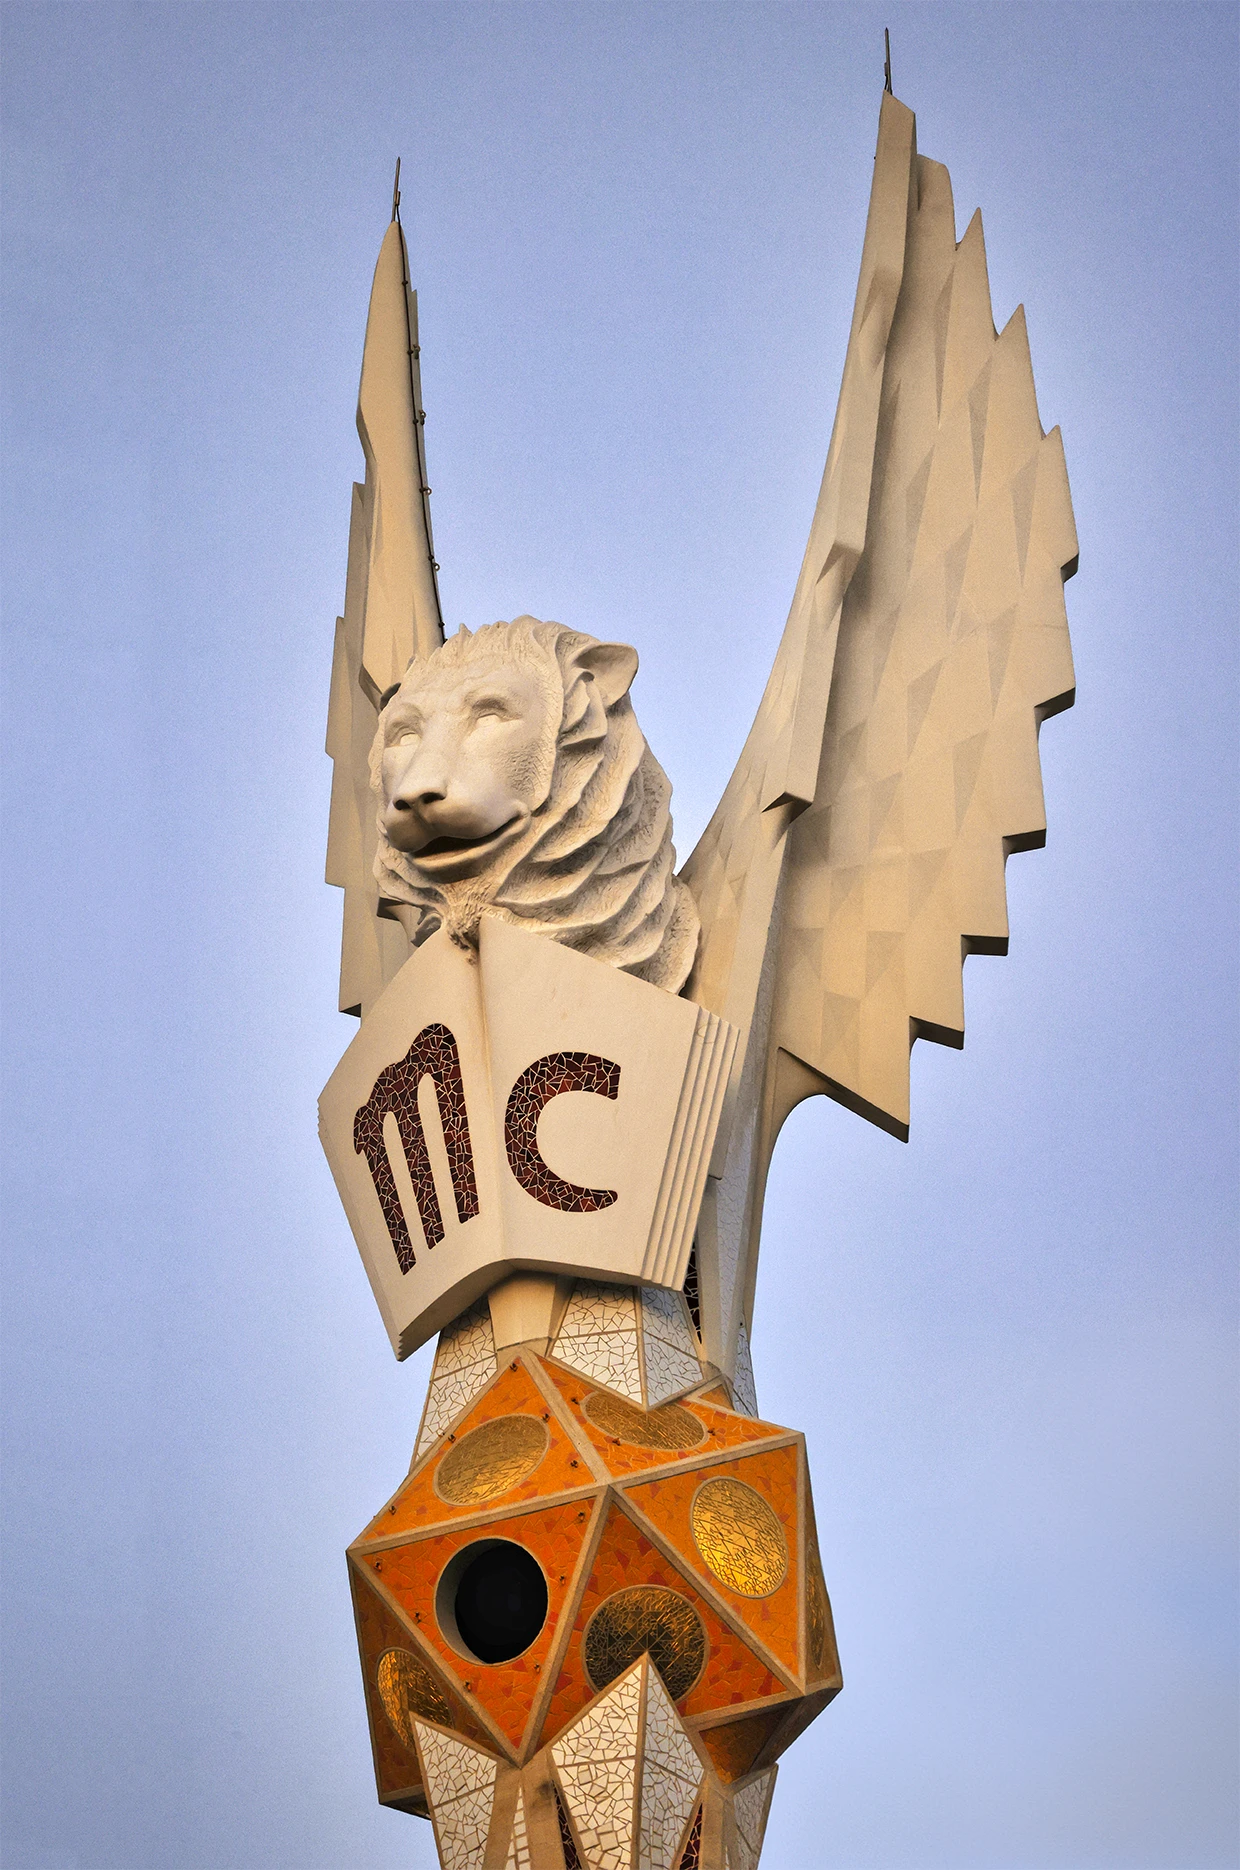 Escultura que remata la torre dedicada a San Marcos